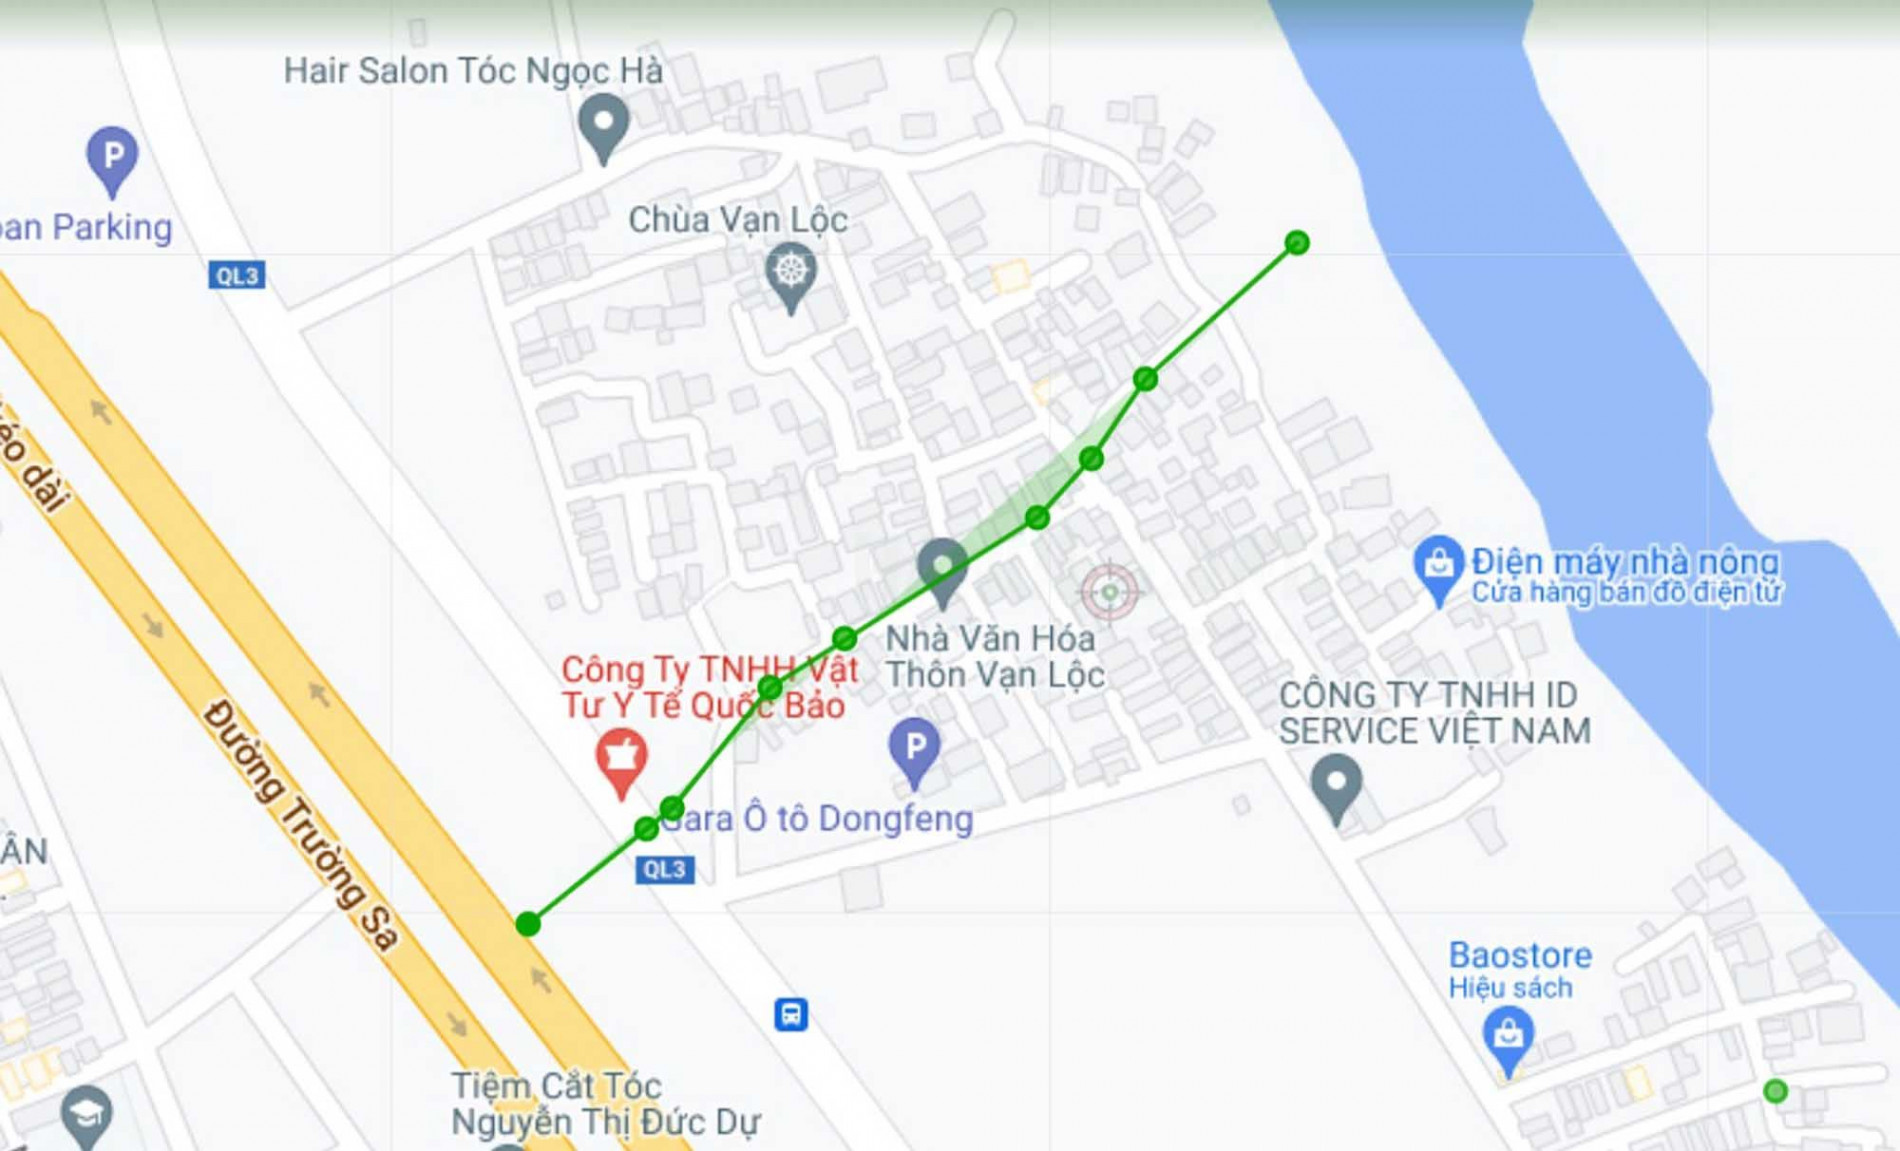 Đường sẽ mở theo quy hoạch ở xã Xuân Canh, Đông Anh, Hà Nội (phần 4)